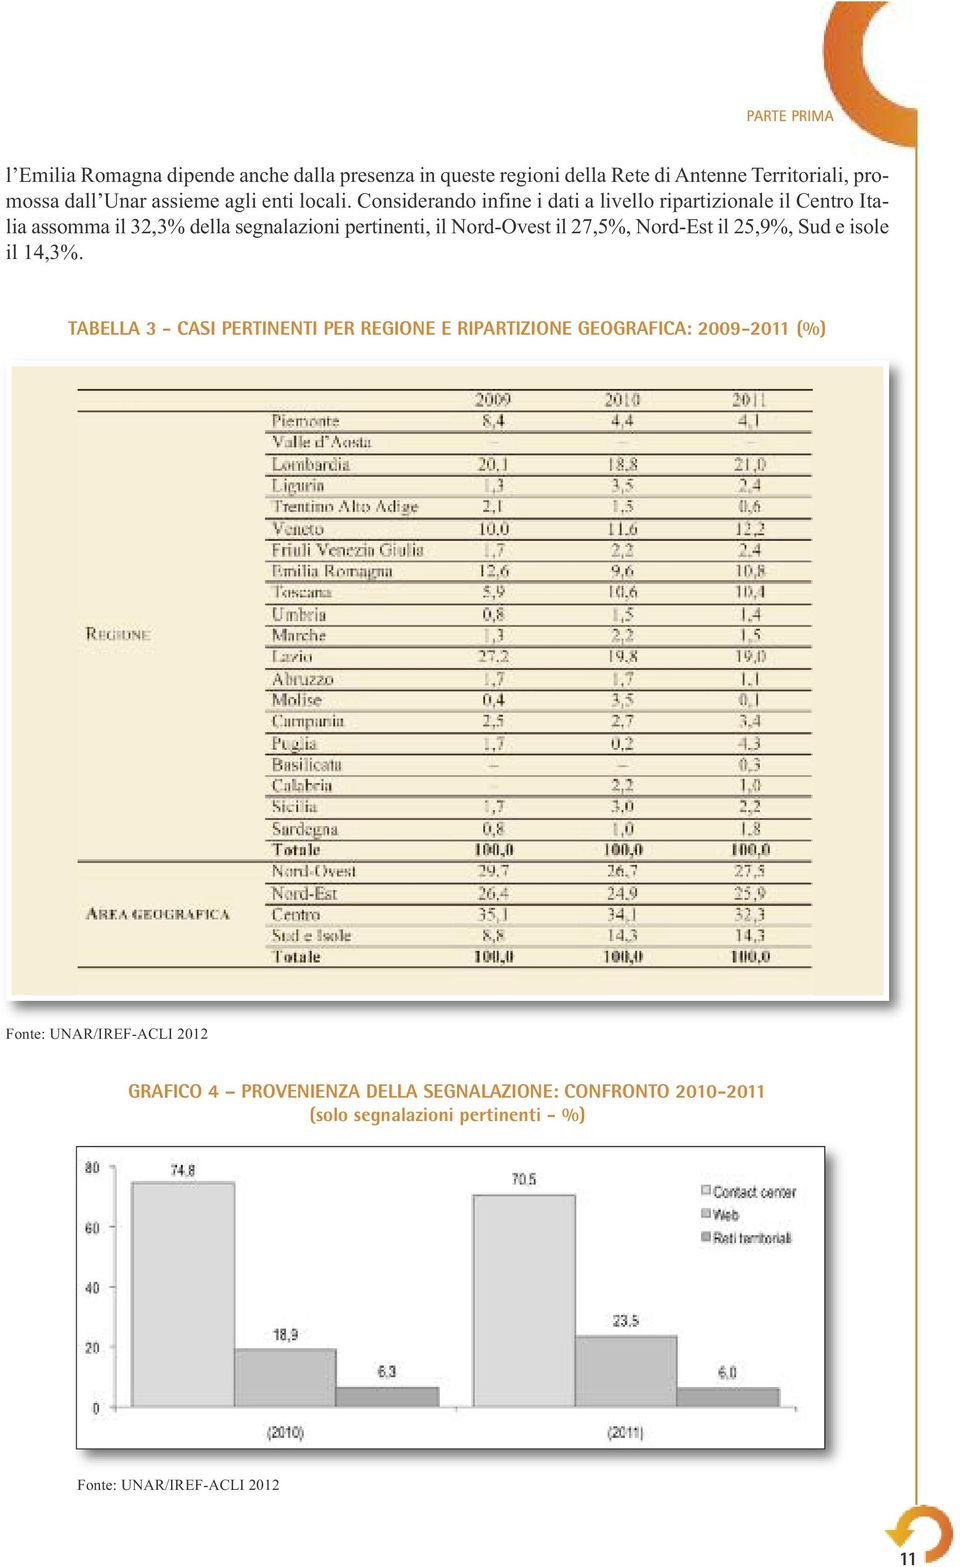 Considerando infine i dati a livello ripartizionale il Centro Italia assomma il 32,3% della segnalazioni pertinenti, il Nord-Ovest il 27,5%,